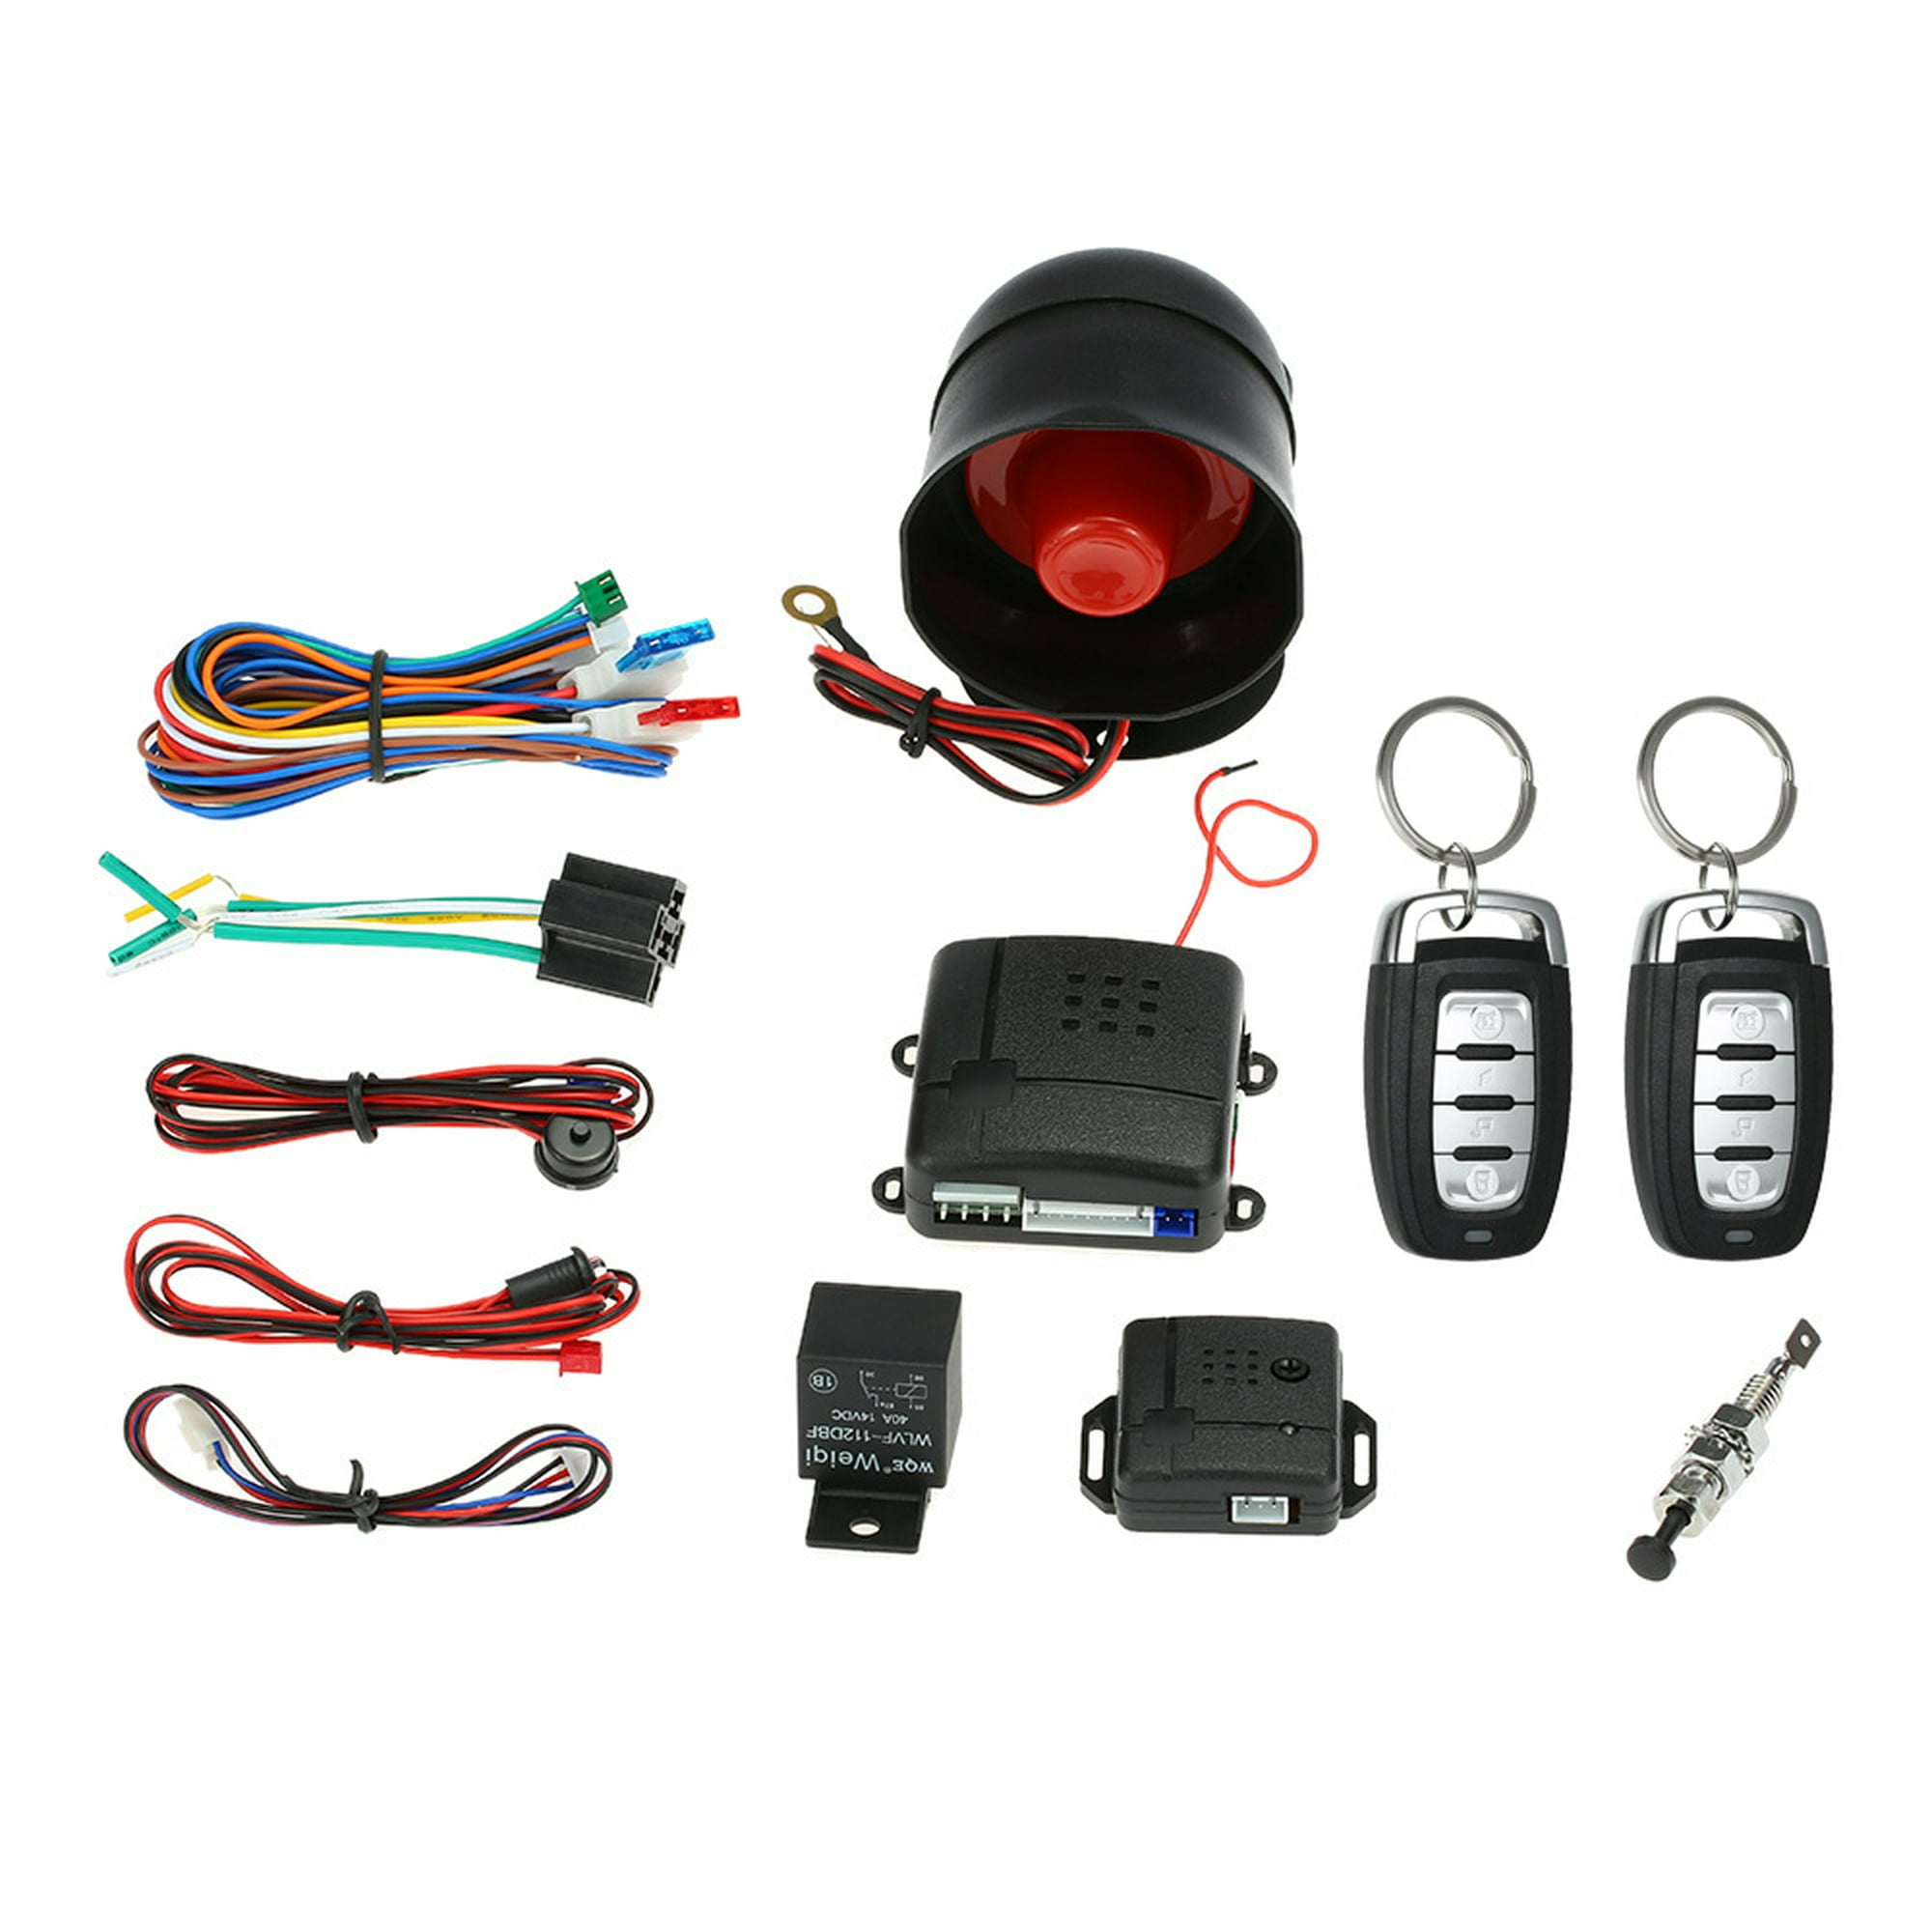  01 HD DVR para coche, grabadora de conducción de coche, cámara  delantera y trasera para automóviles con función de grabación antirrobo para  seguridad del automóvil : Electrónica